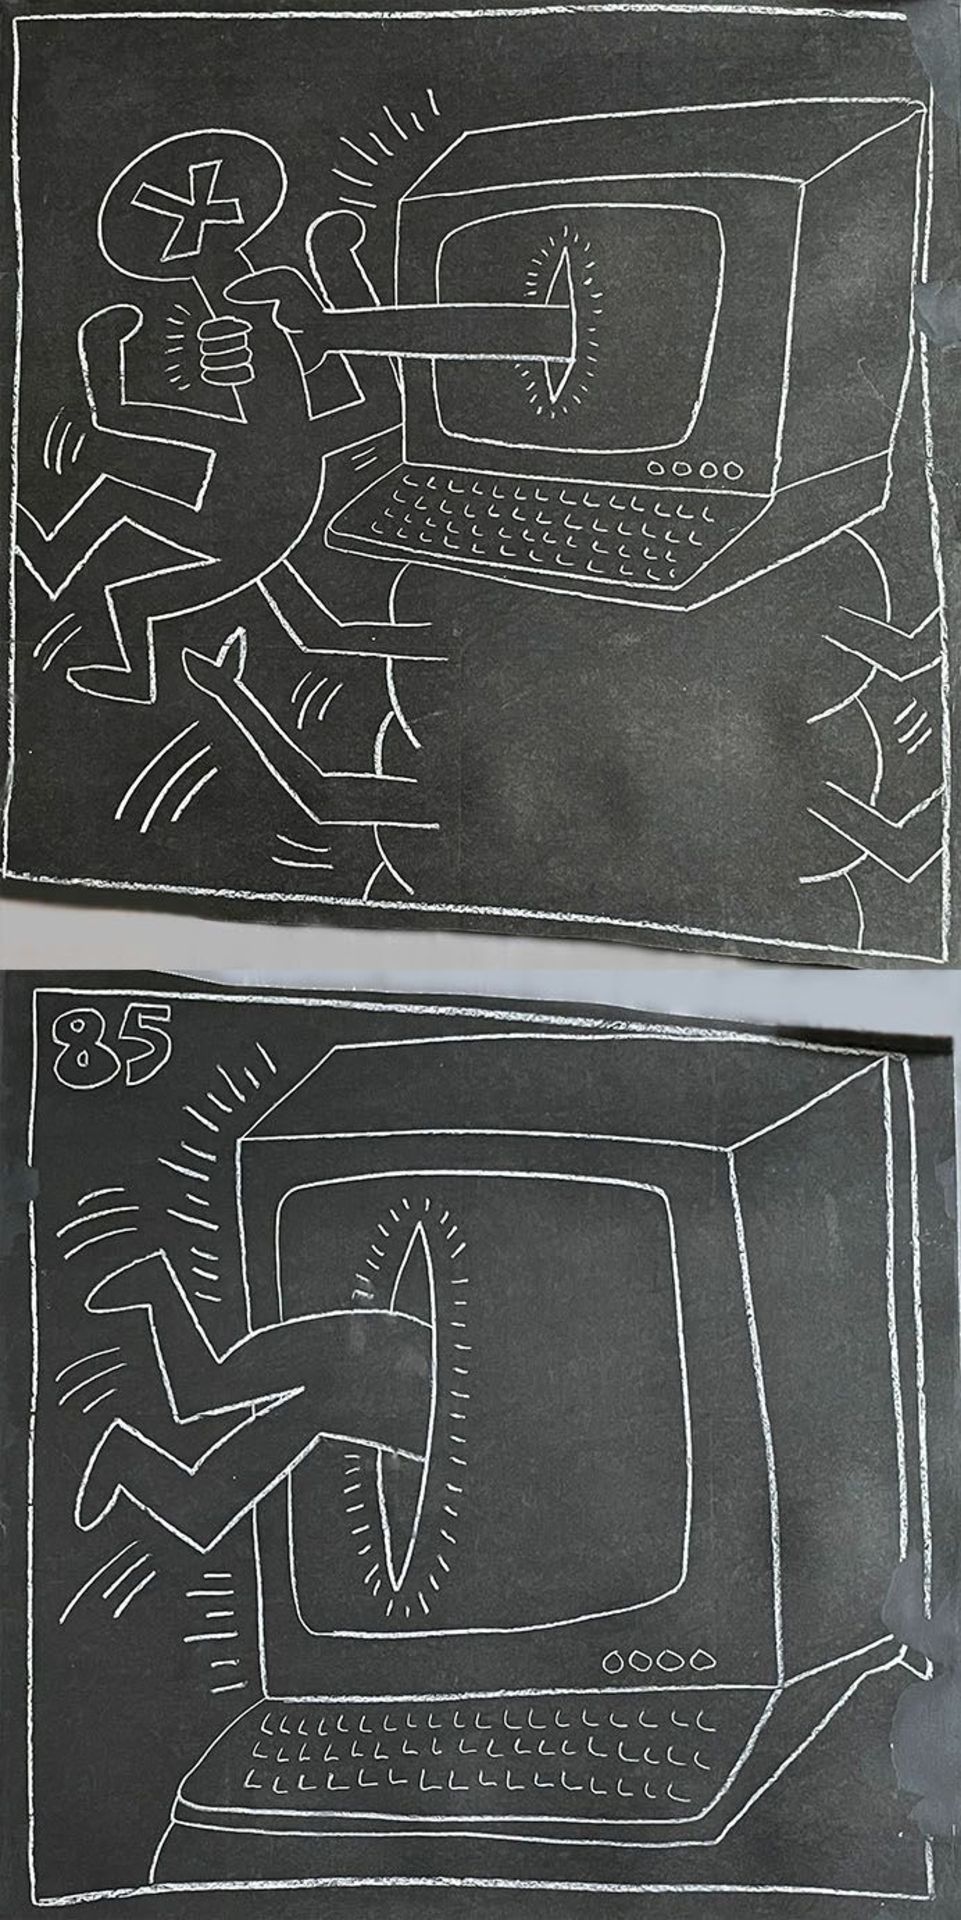 Keith Haring (1958-1990) zugeschr., Untitled (Subway Drawing), weiße Kreidezeichnung auf schwarzem